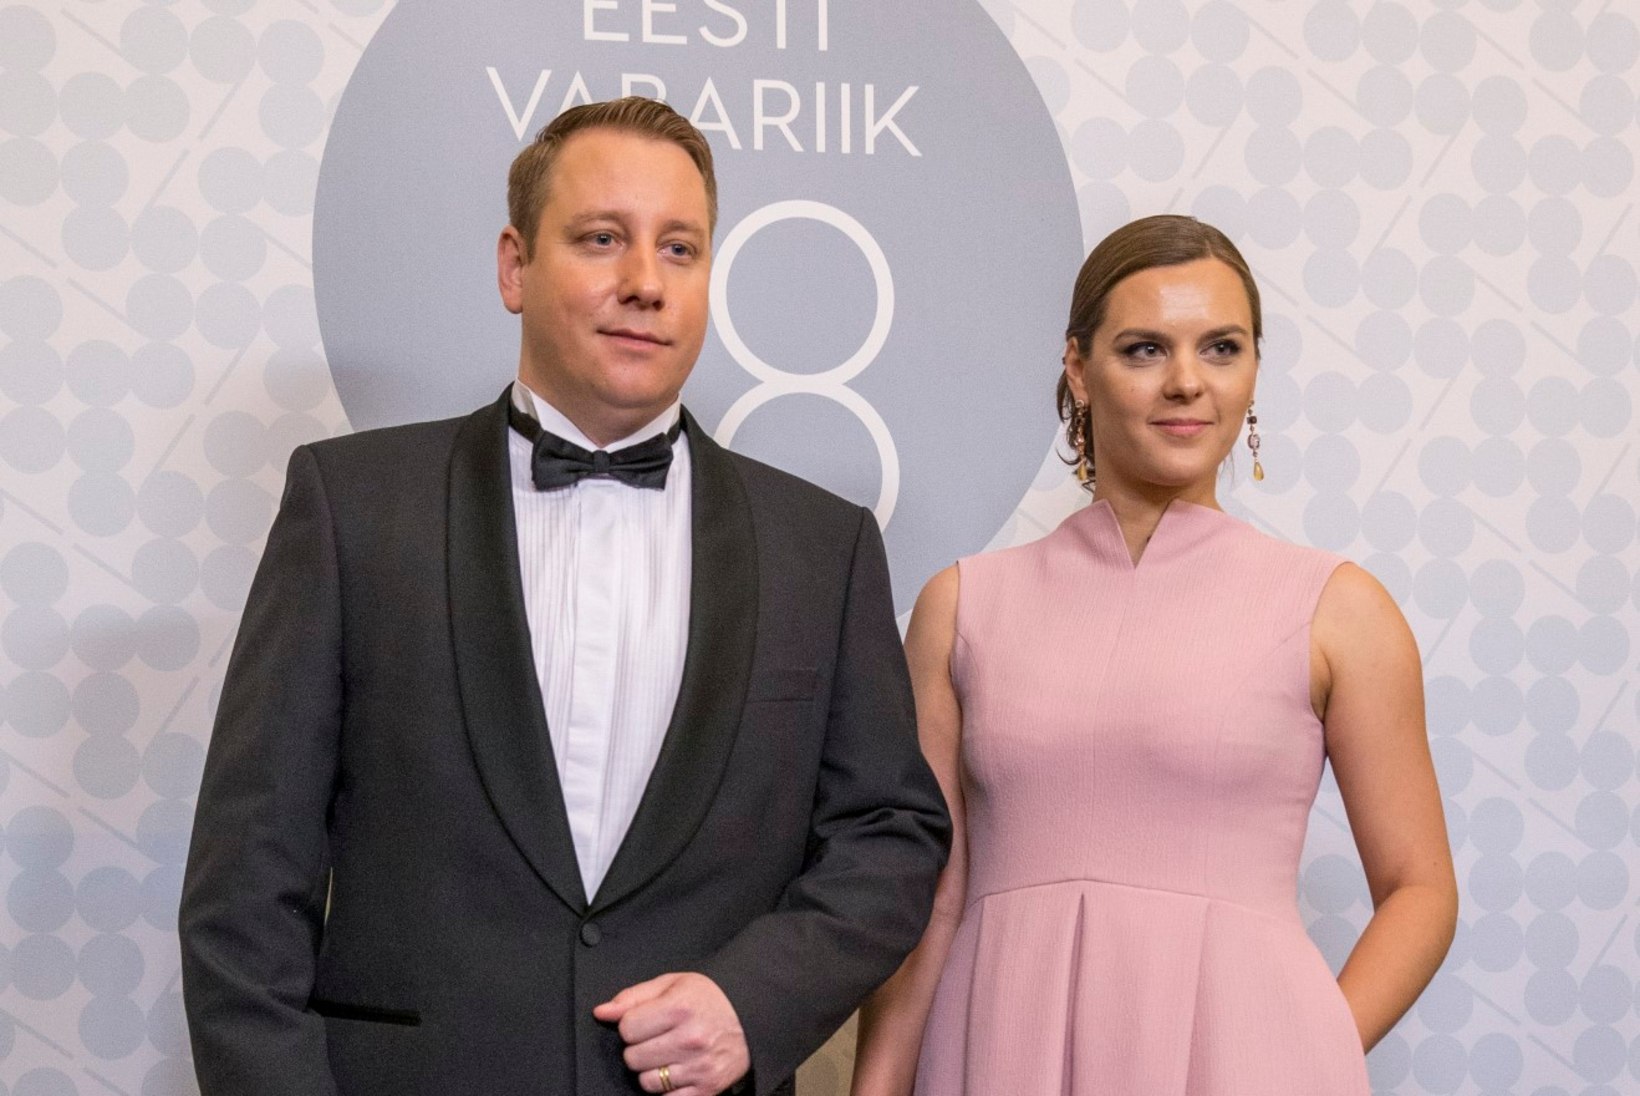 GALERII | Vaata Eesti Vabariigi aastapäeva vastuvõttude roosasid kleite